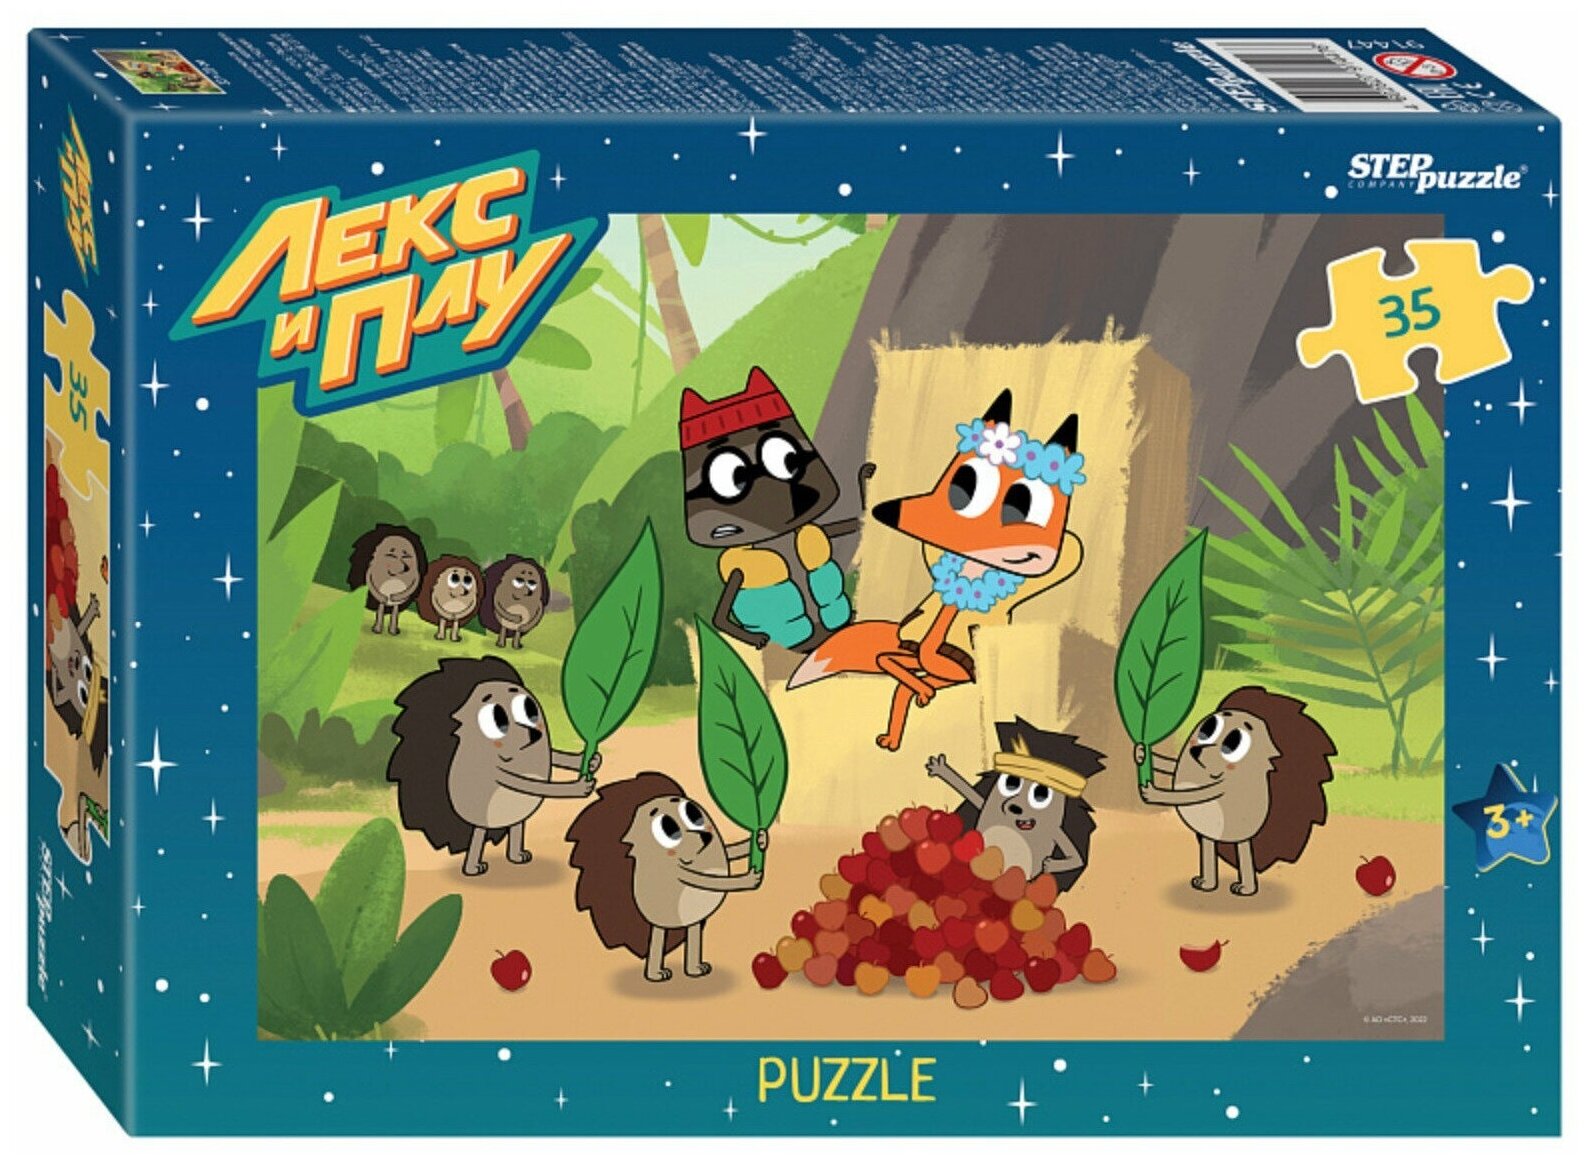 Детский пазл "Лекс и Плу", игра-головоломка паззл для детей, Step Puzzle, 35 деталей